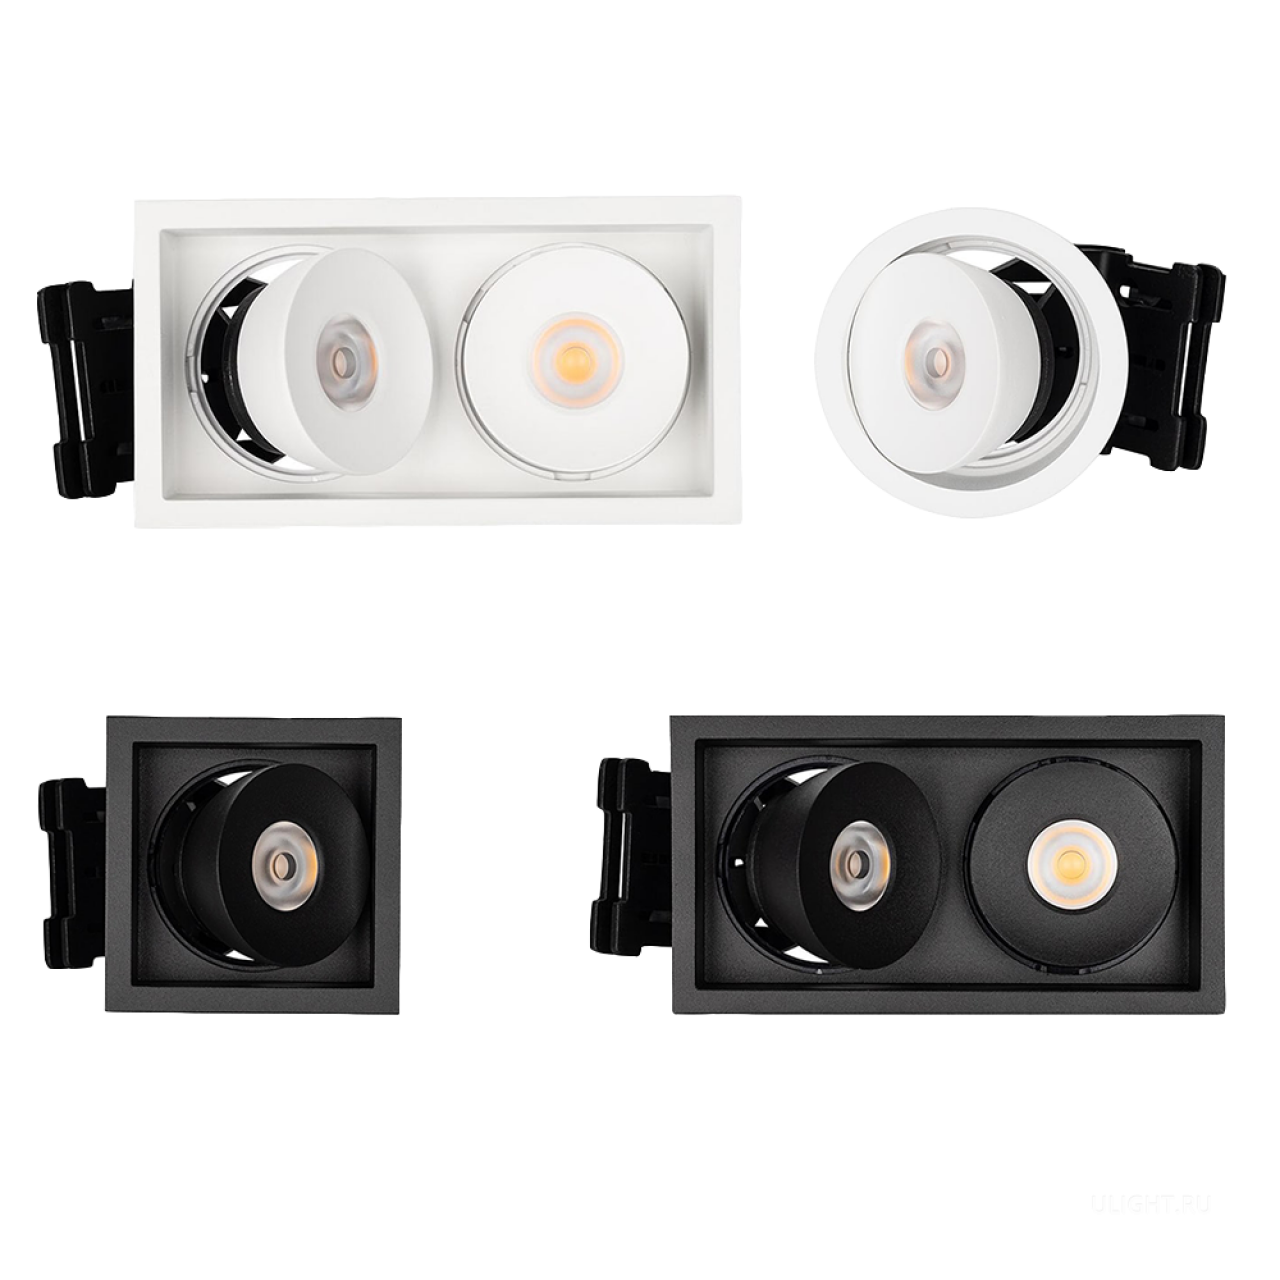 Серия CL-SIMPLE представлена двумя видами светильников: одинарными и двойными прямоугольными.
Мощность одинарных светильников составляет 9 Вт, двойных – 2×9 Вт. Серия выпускается в двух цветовых вариациях корпуса – белом и черном.